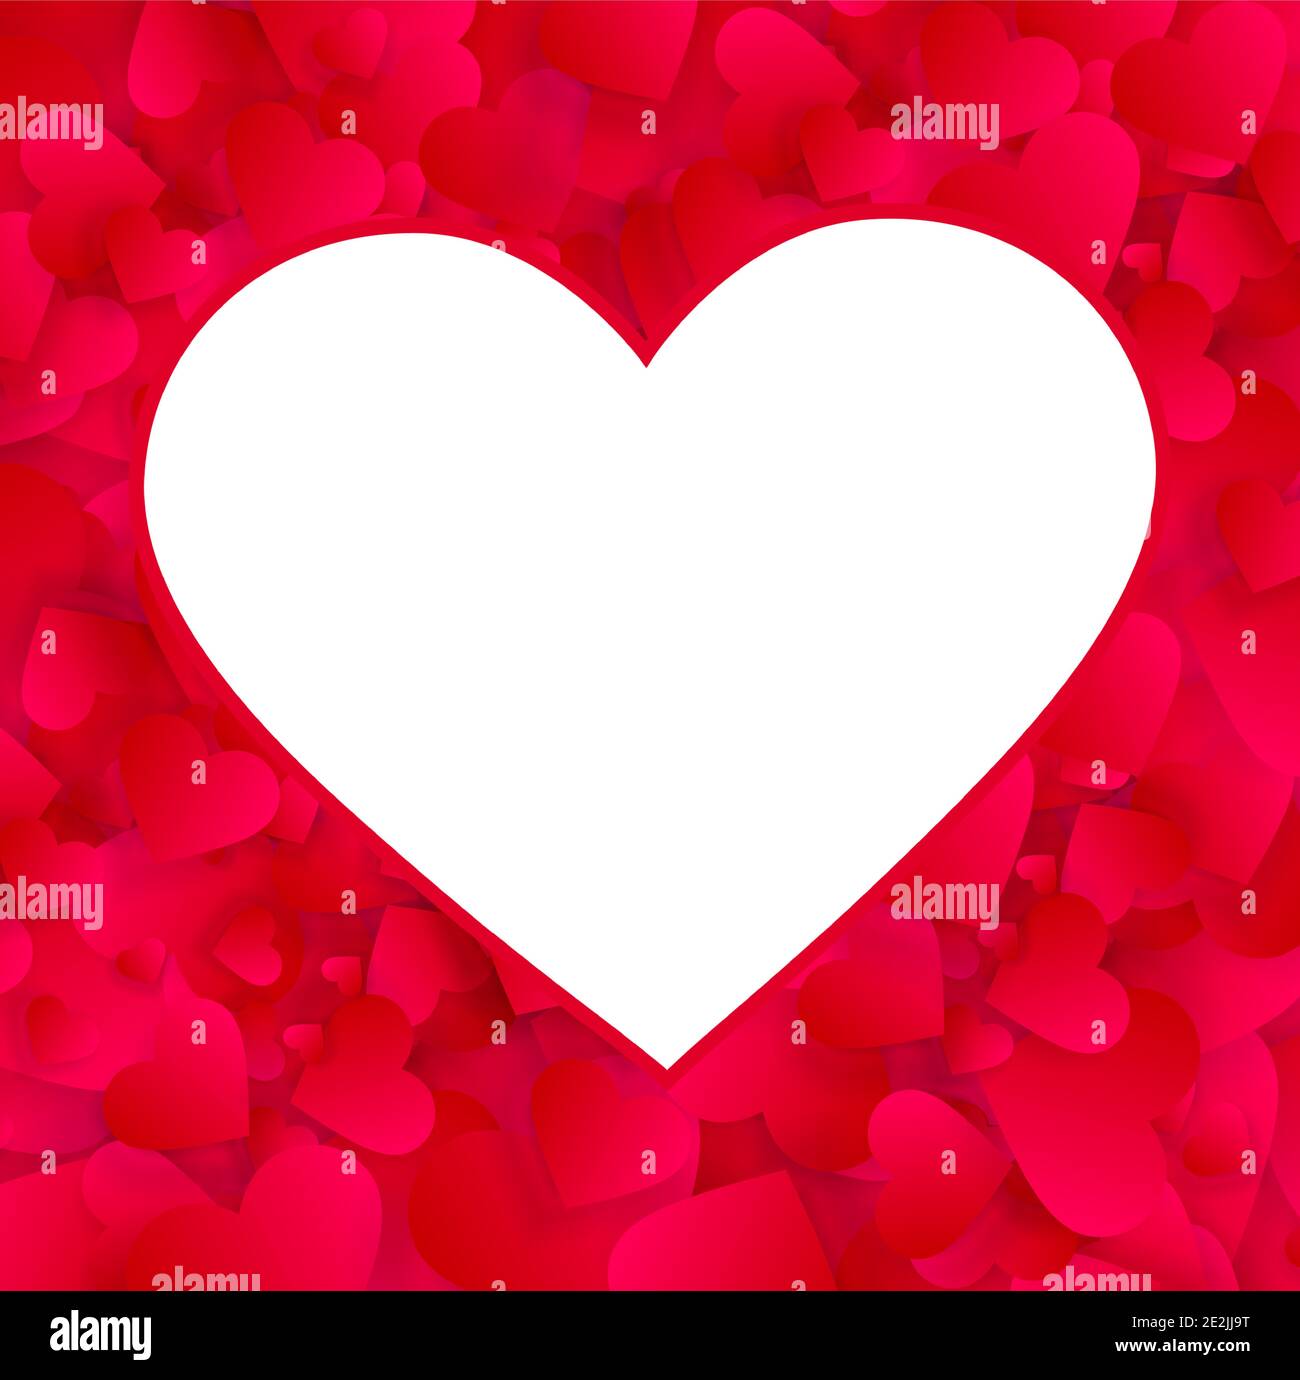 Herz Fotorahmen Vektor leeren Rand, Liebe Hintergrund mit roten Herzen Konfetti oder Blütenblätter. PhotoFrame, Valentinstag Hochzeit Einladung Vorlage mit Stock Vektor